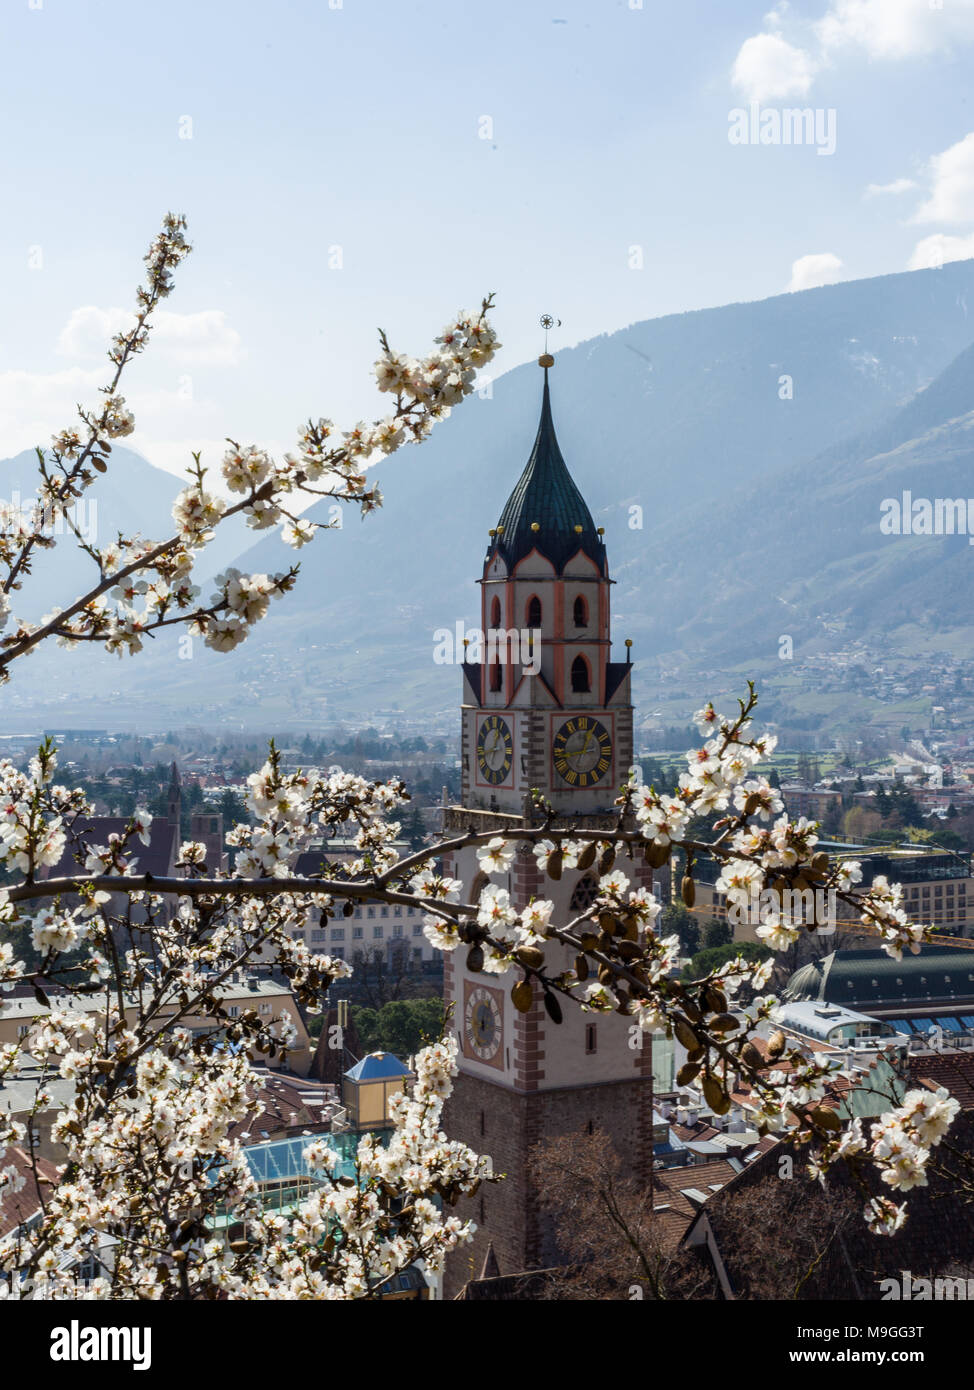 Erste Bäume blühen in Meran, Italien - Kirchturm und die Berge Stockfoto